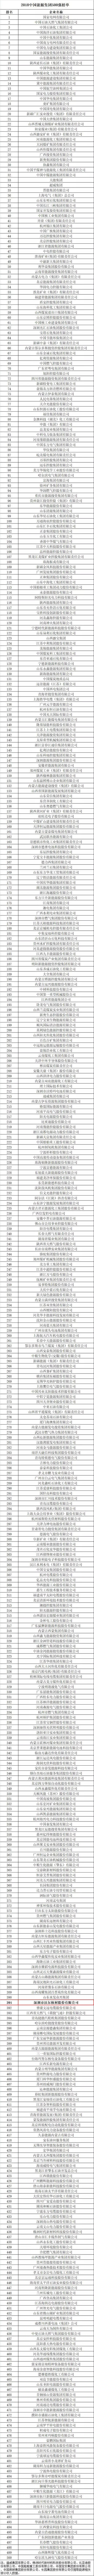 实博sbet荣登2018中国能源集团500强榜单3.jpg